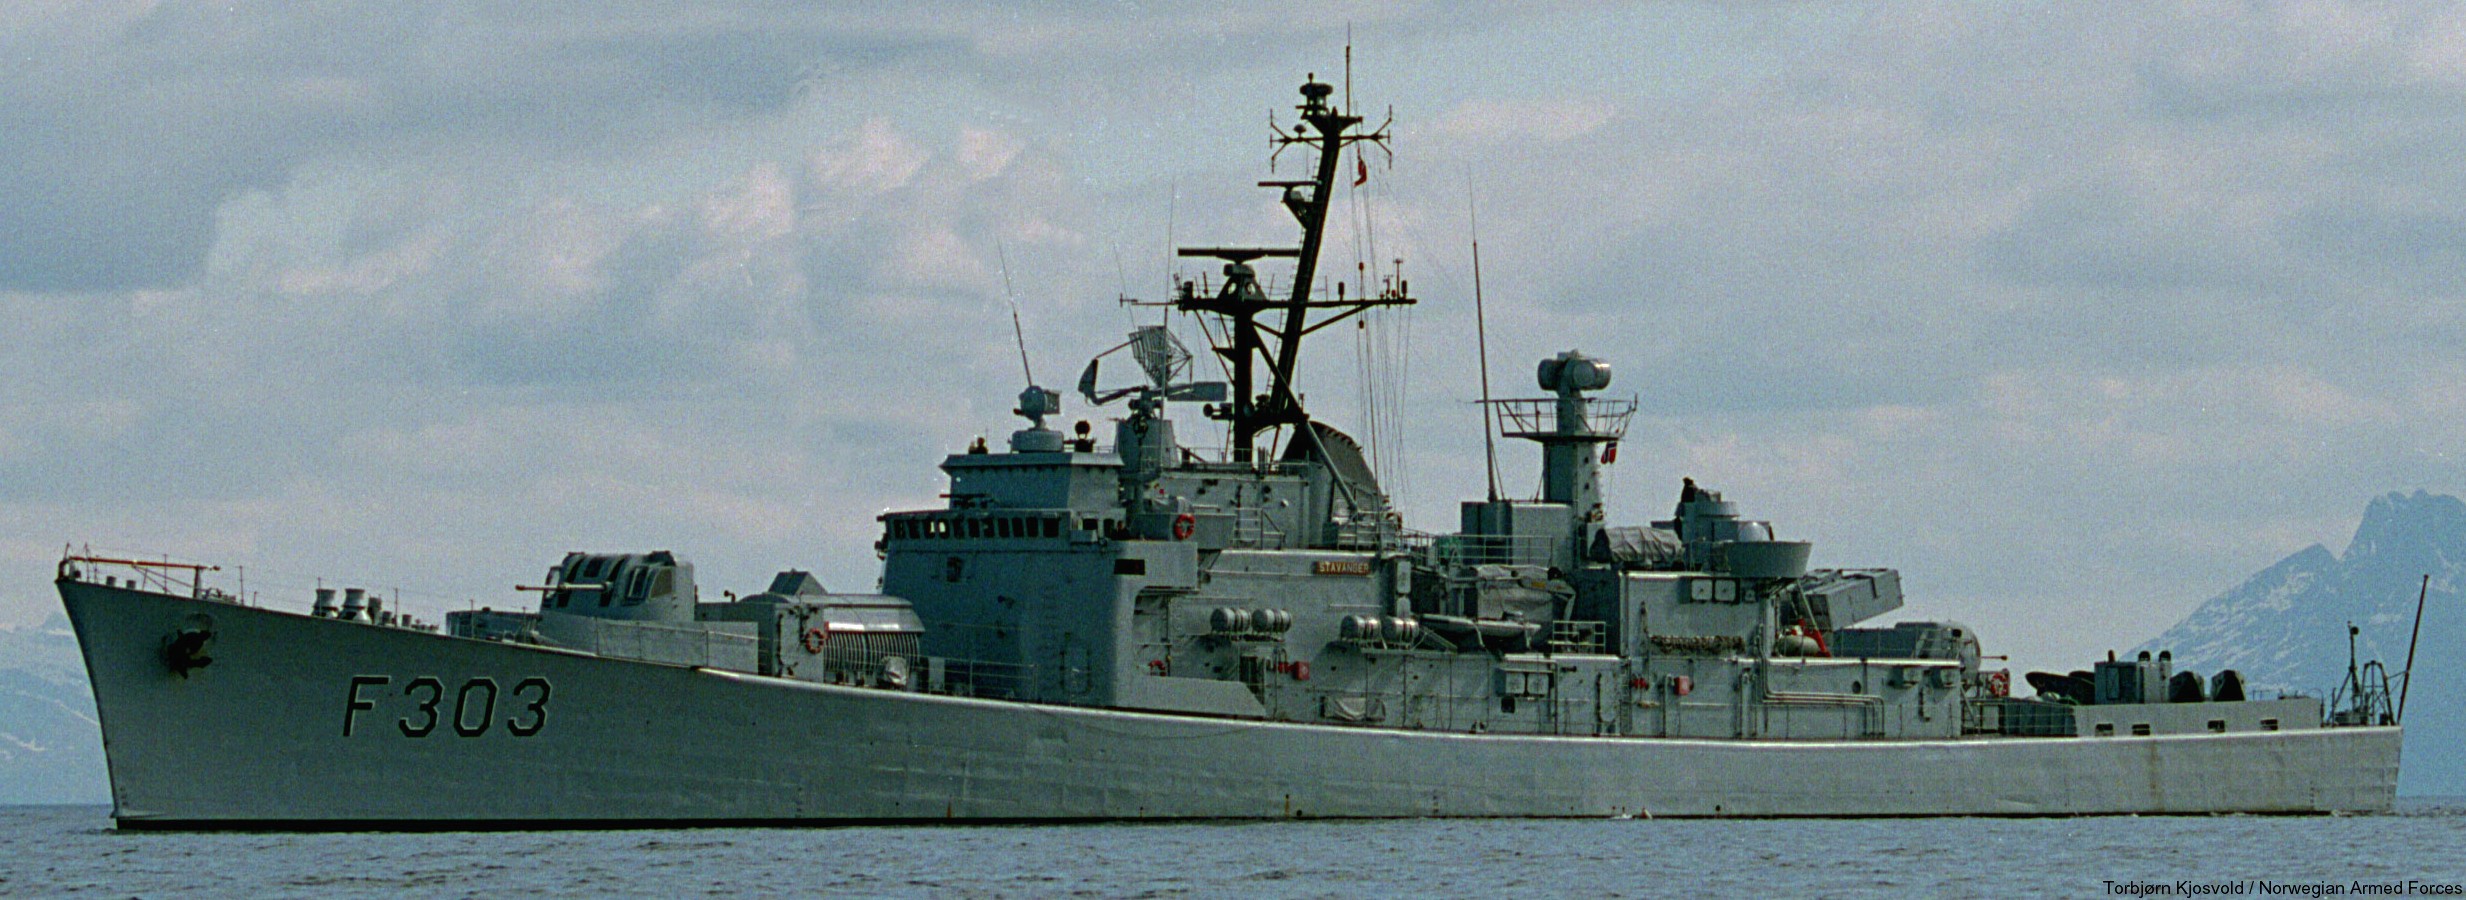 f-303 hnoms stavanger knm oslo class frigate royal norwegian navy sjoforsvaret 10